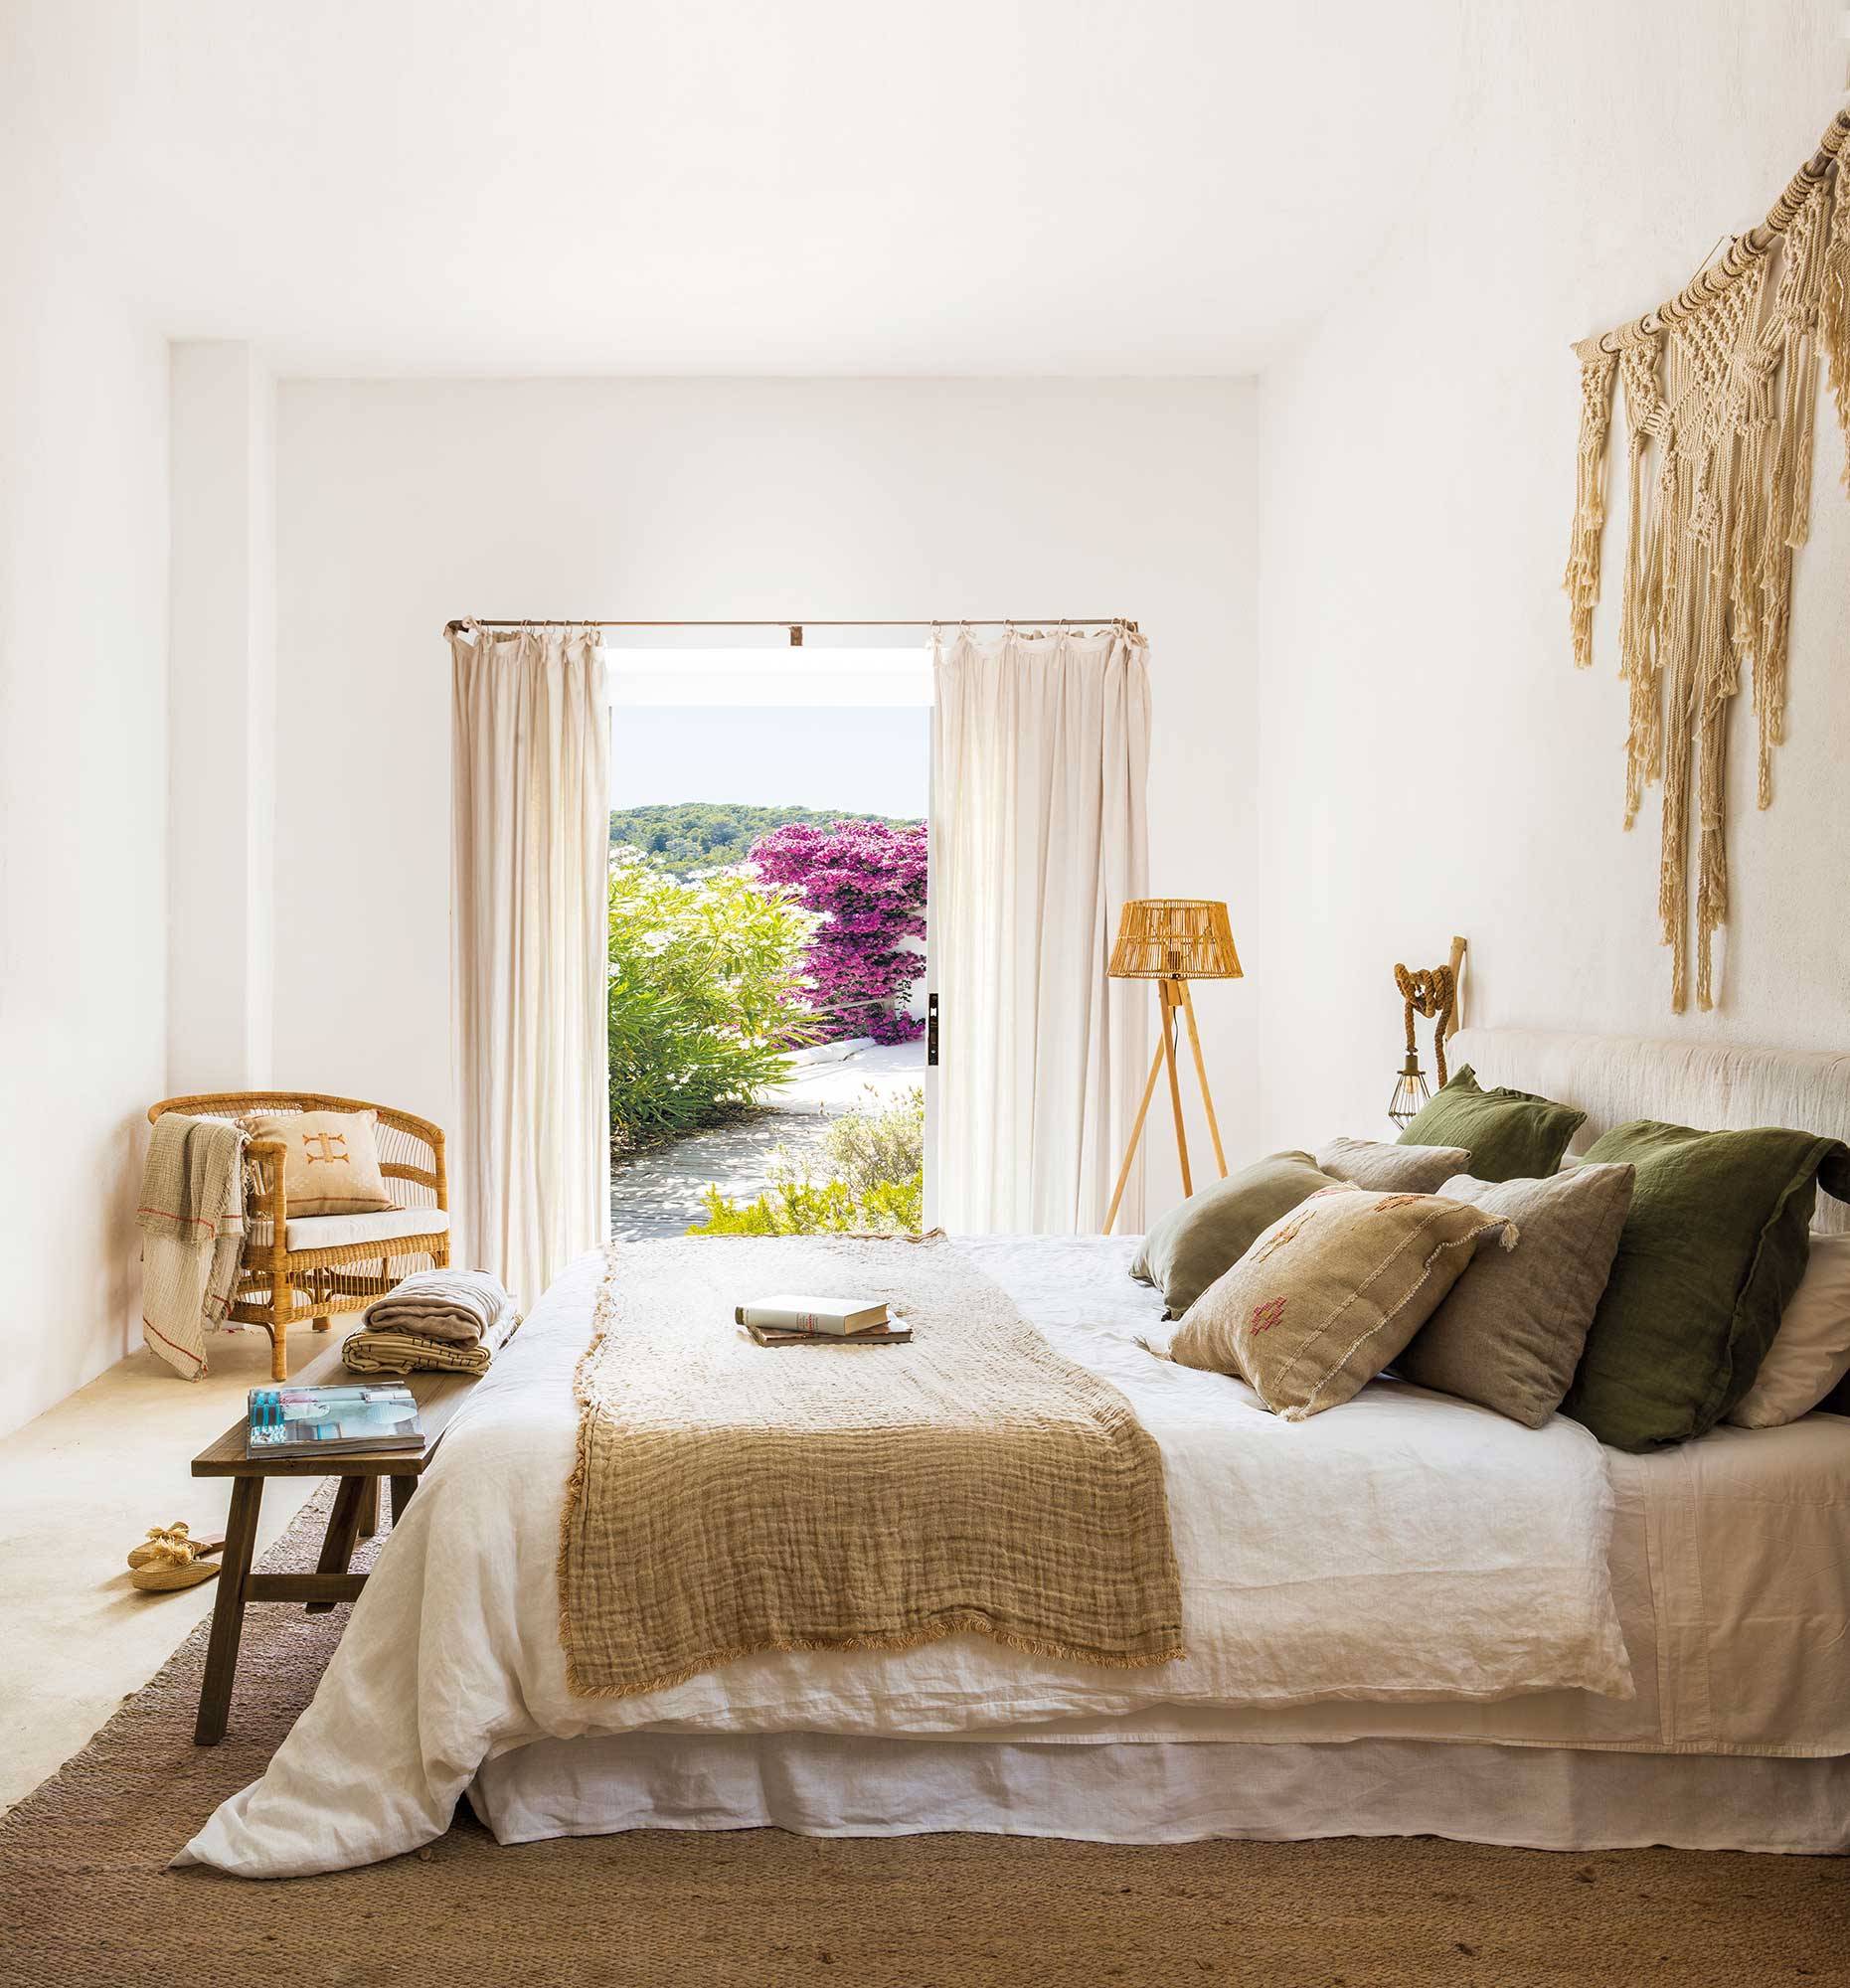 Dormitorio de primavera en tonos beiges y verdes y decoración artesanal en pared.